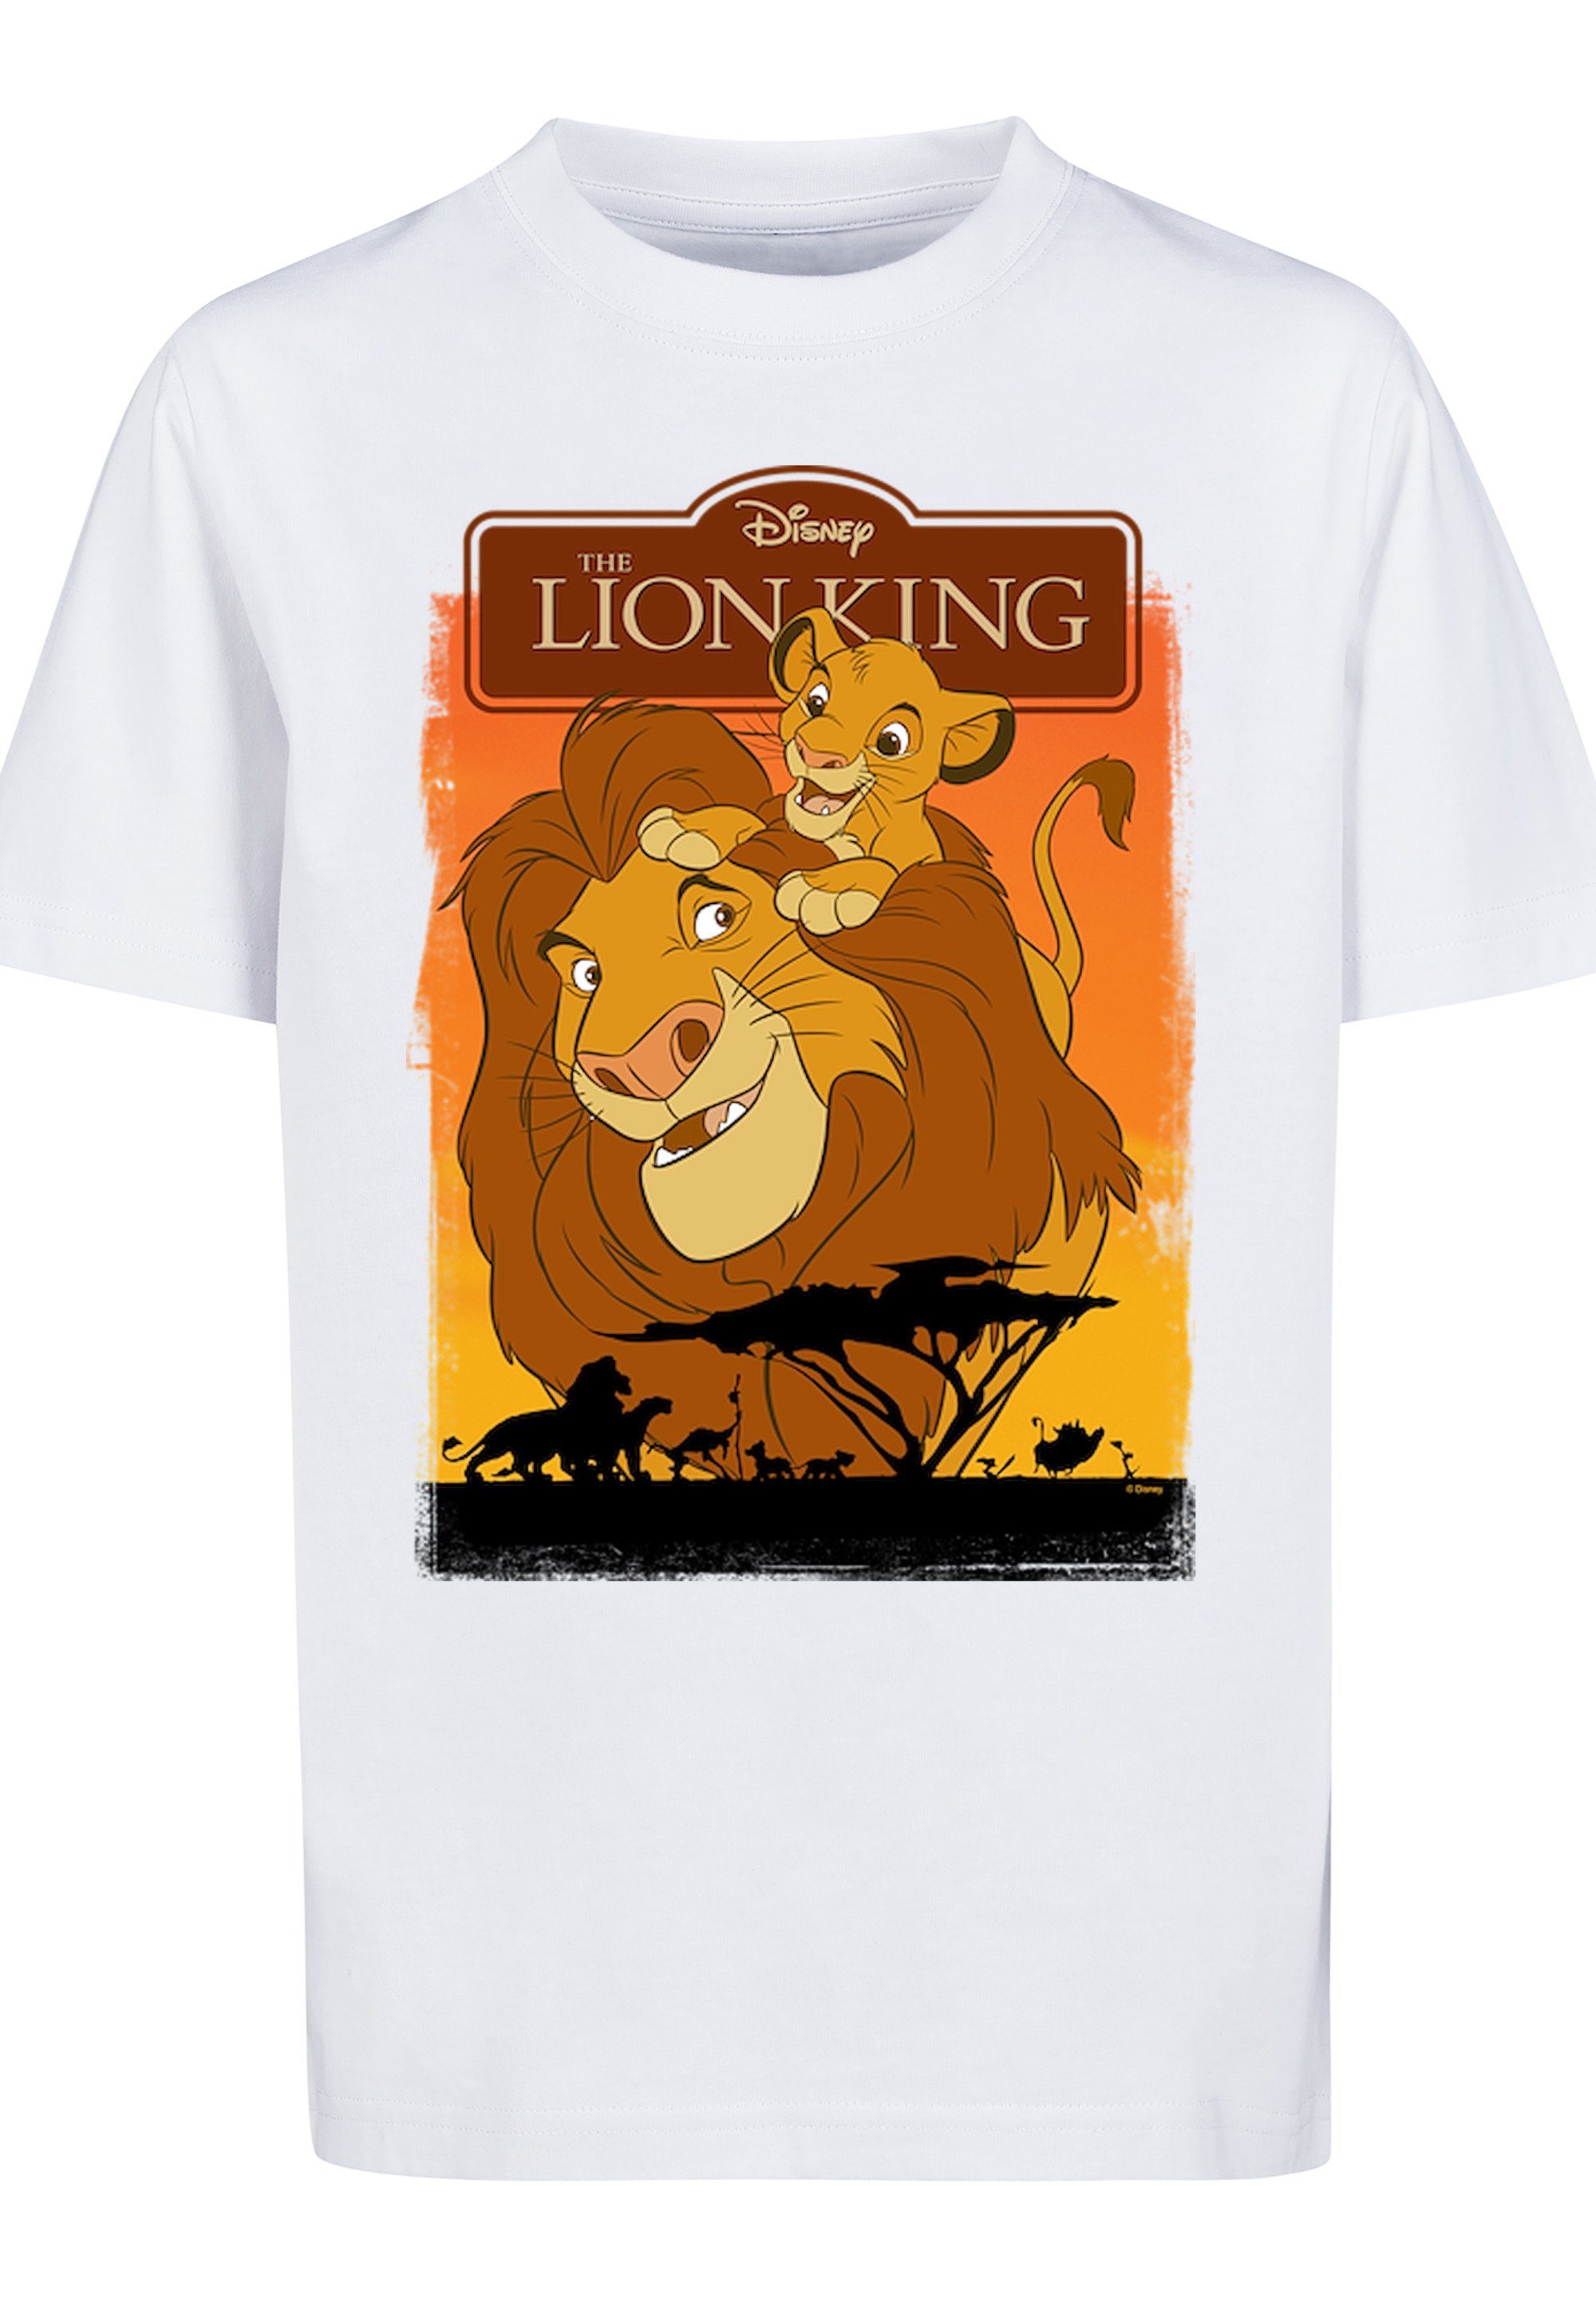 F4NT4STIC T-Shirt König der Löwen Simba und Mufasa Print, Bequemer Schnitt  zum rundum wohlfühlen